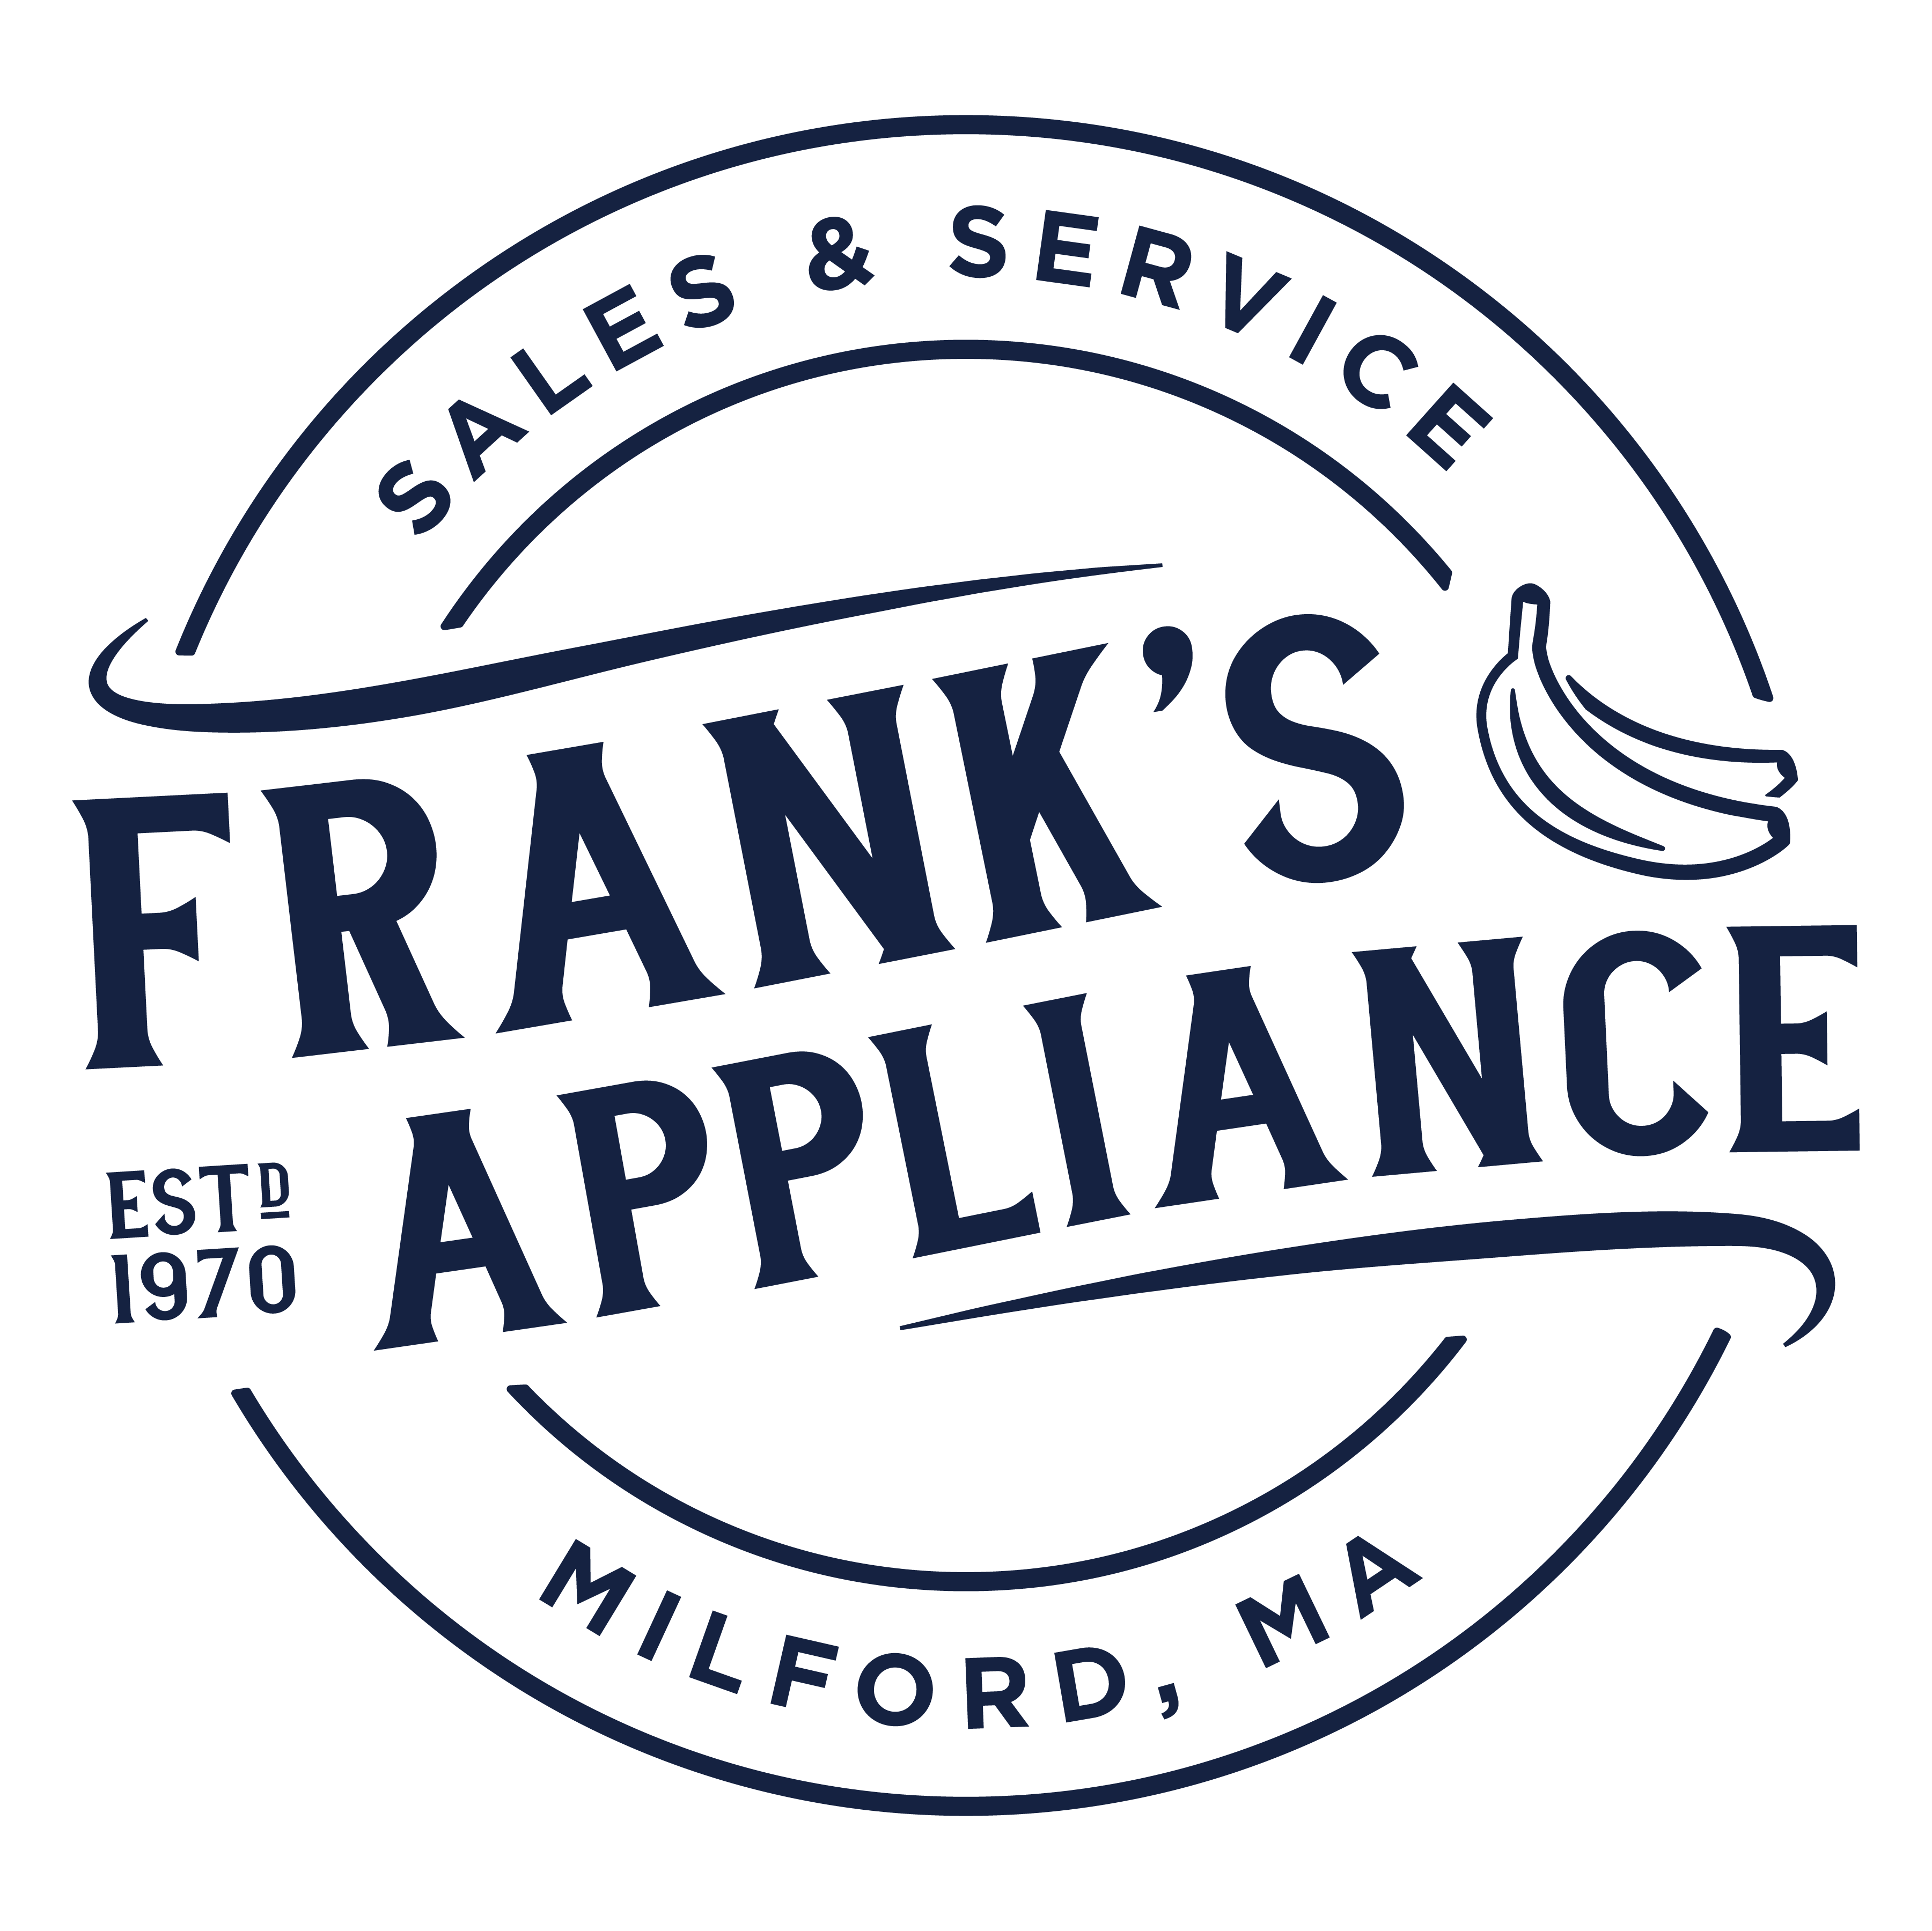 Frank's Appliance